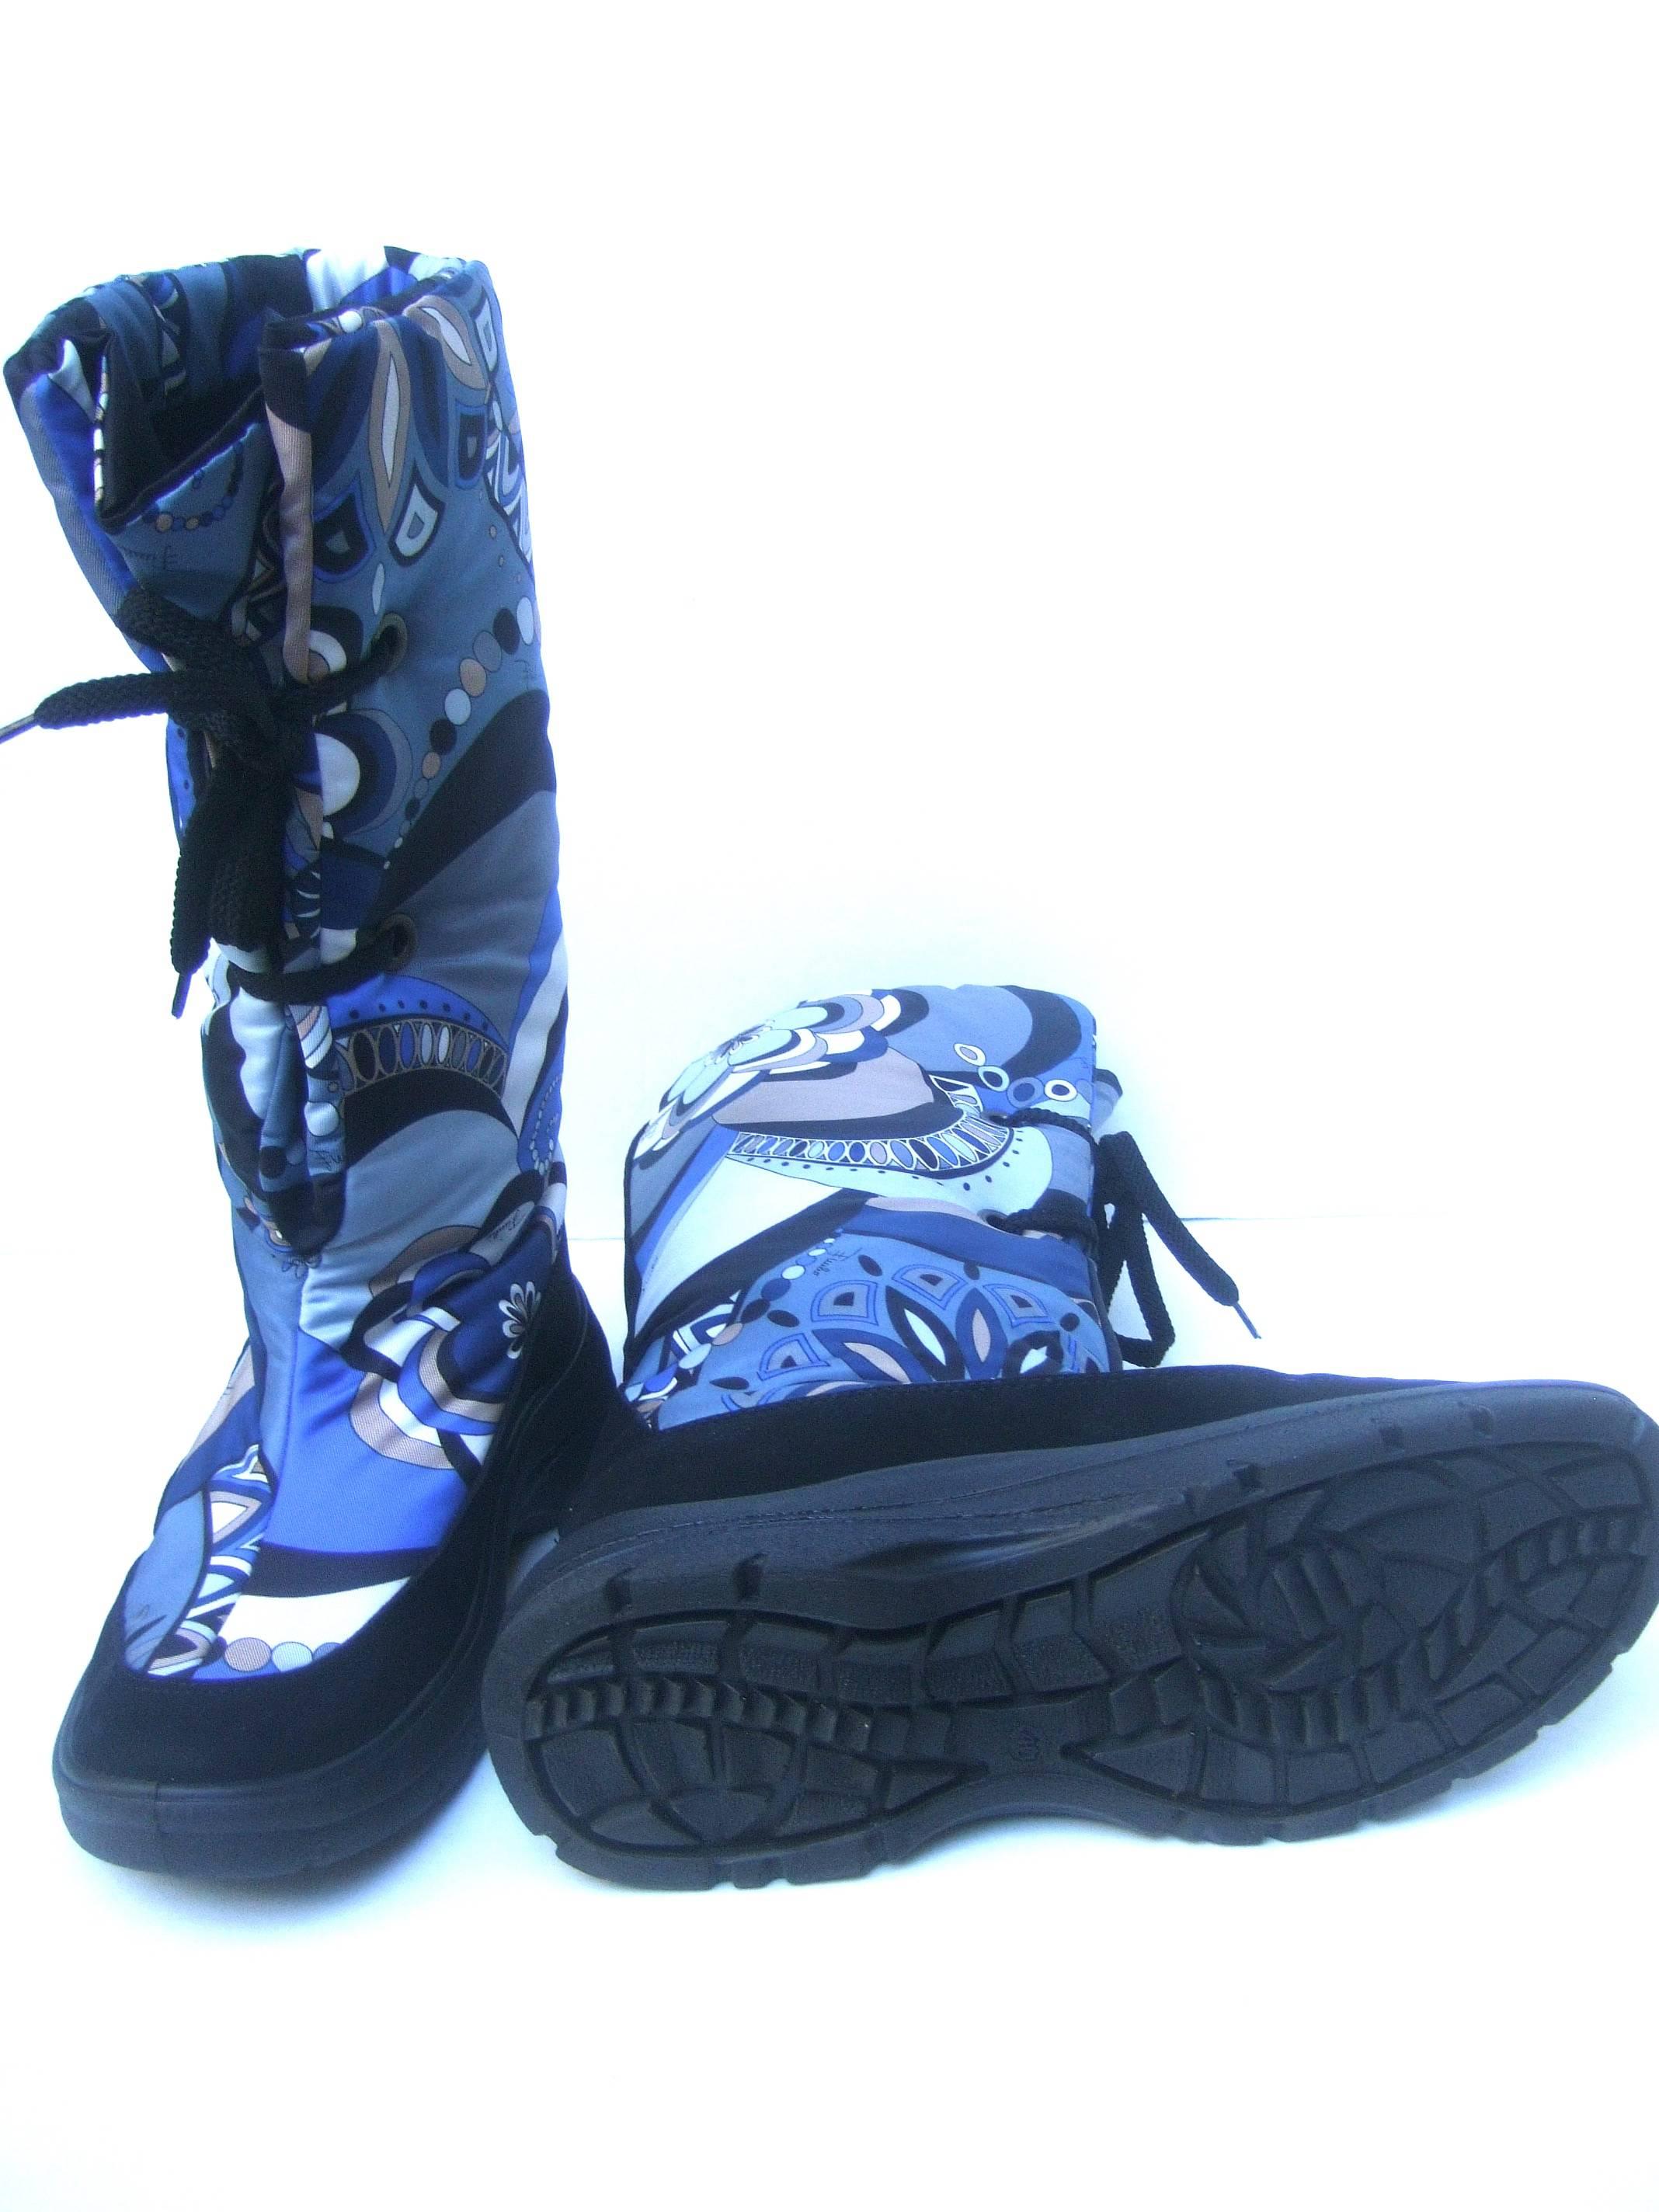 Emilio Pucci Bold Nylon Print Ski Boots Size 40  5